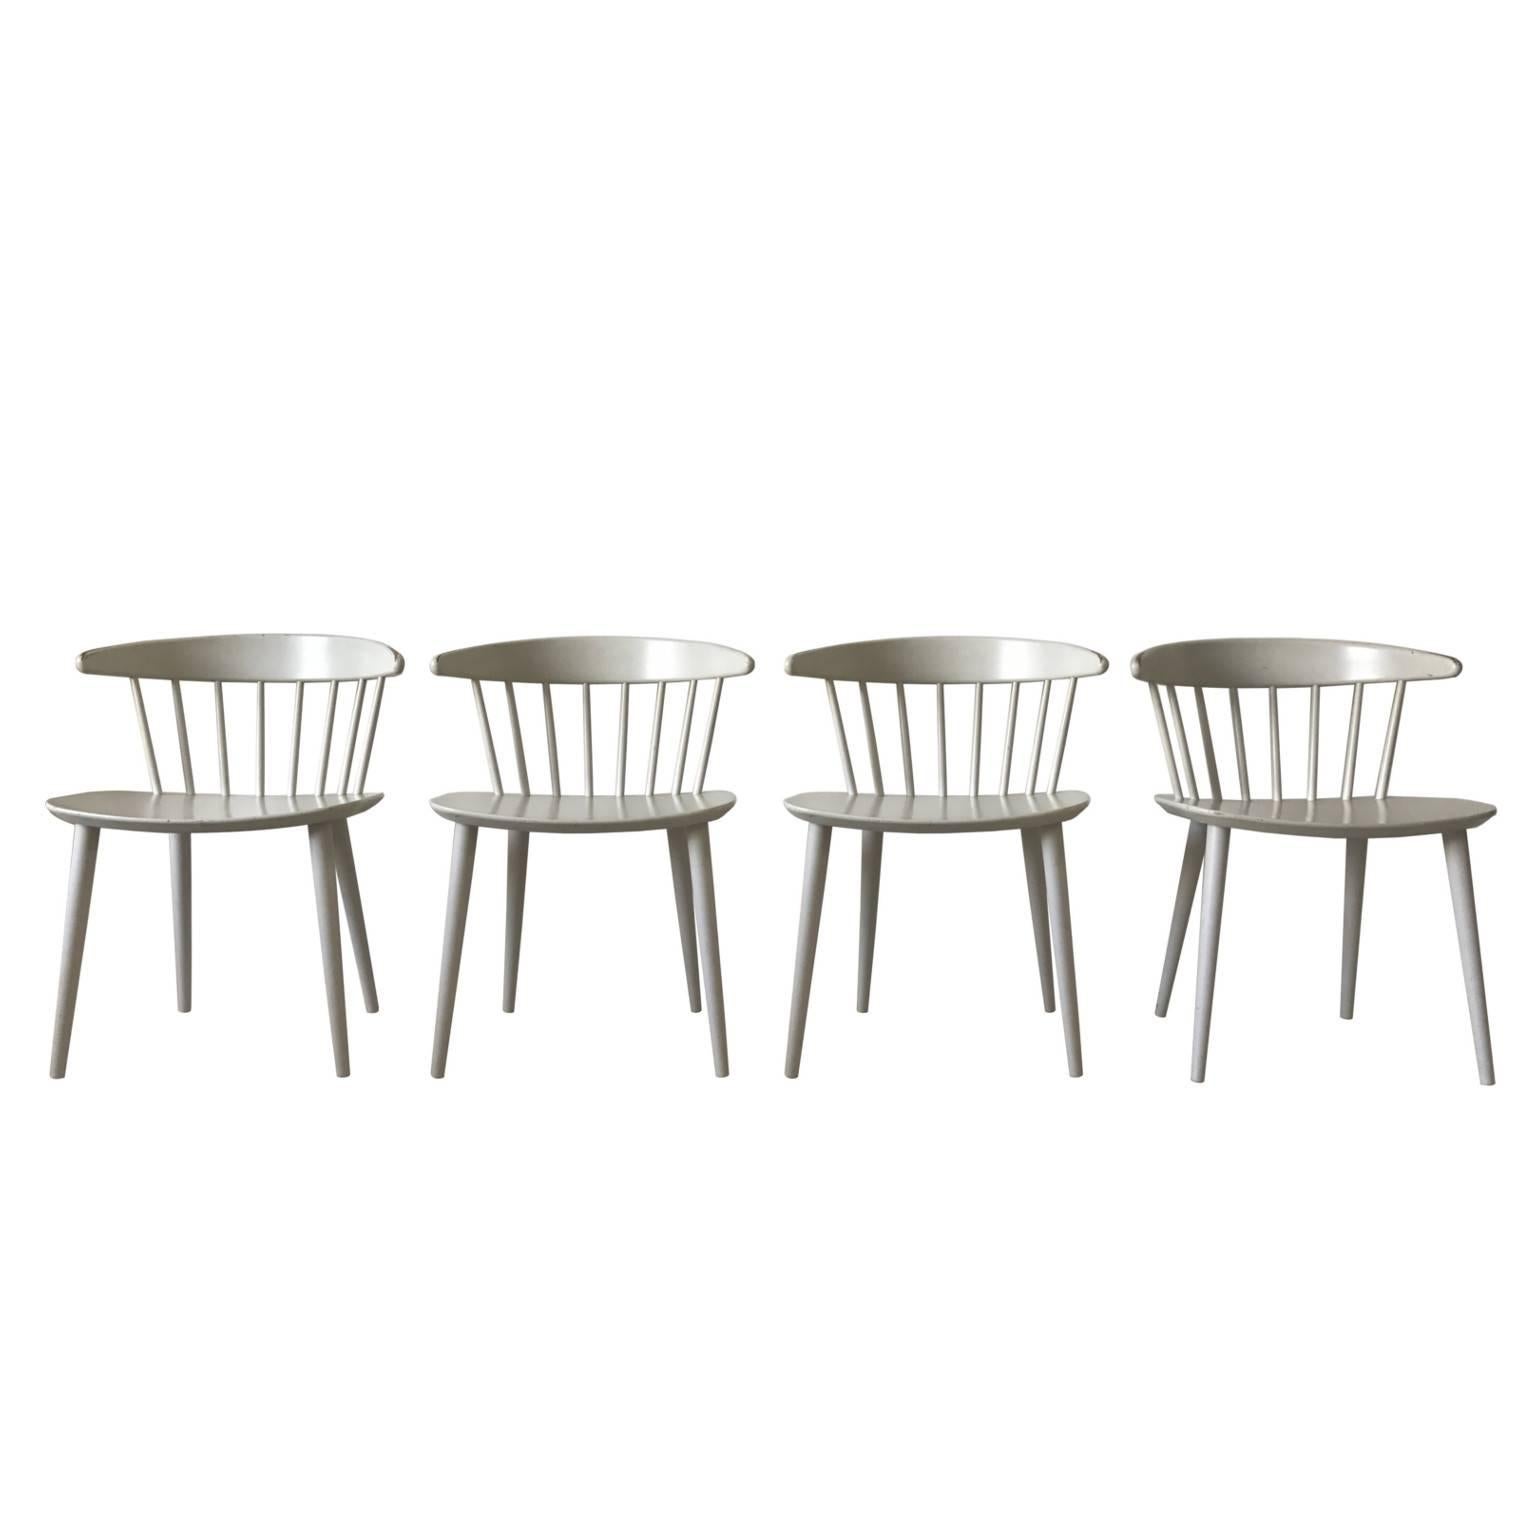 Stunning White J104 Dining Chairs by Jørgen Bækmark for FDB Møbler, 1960s